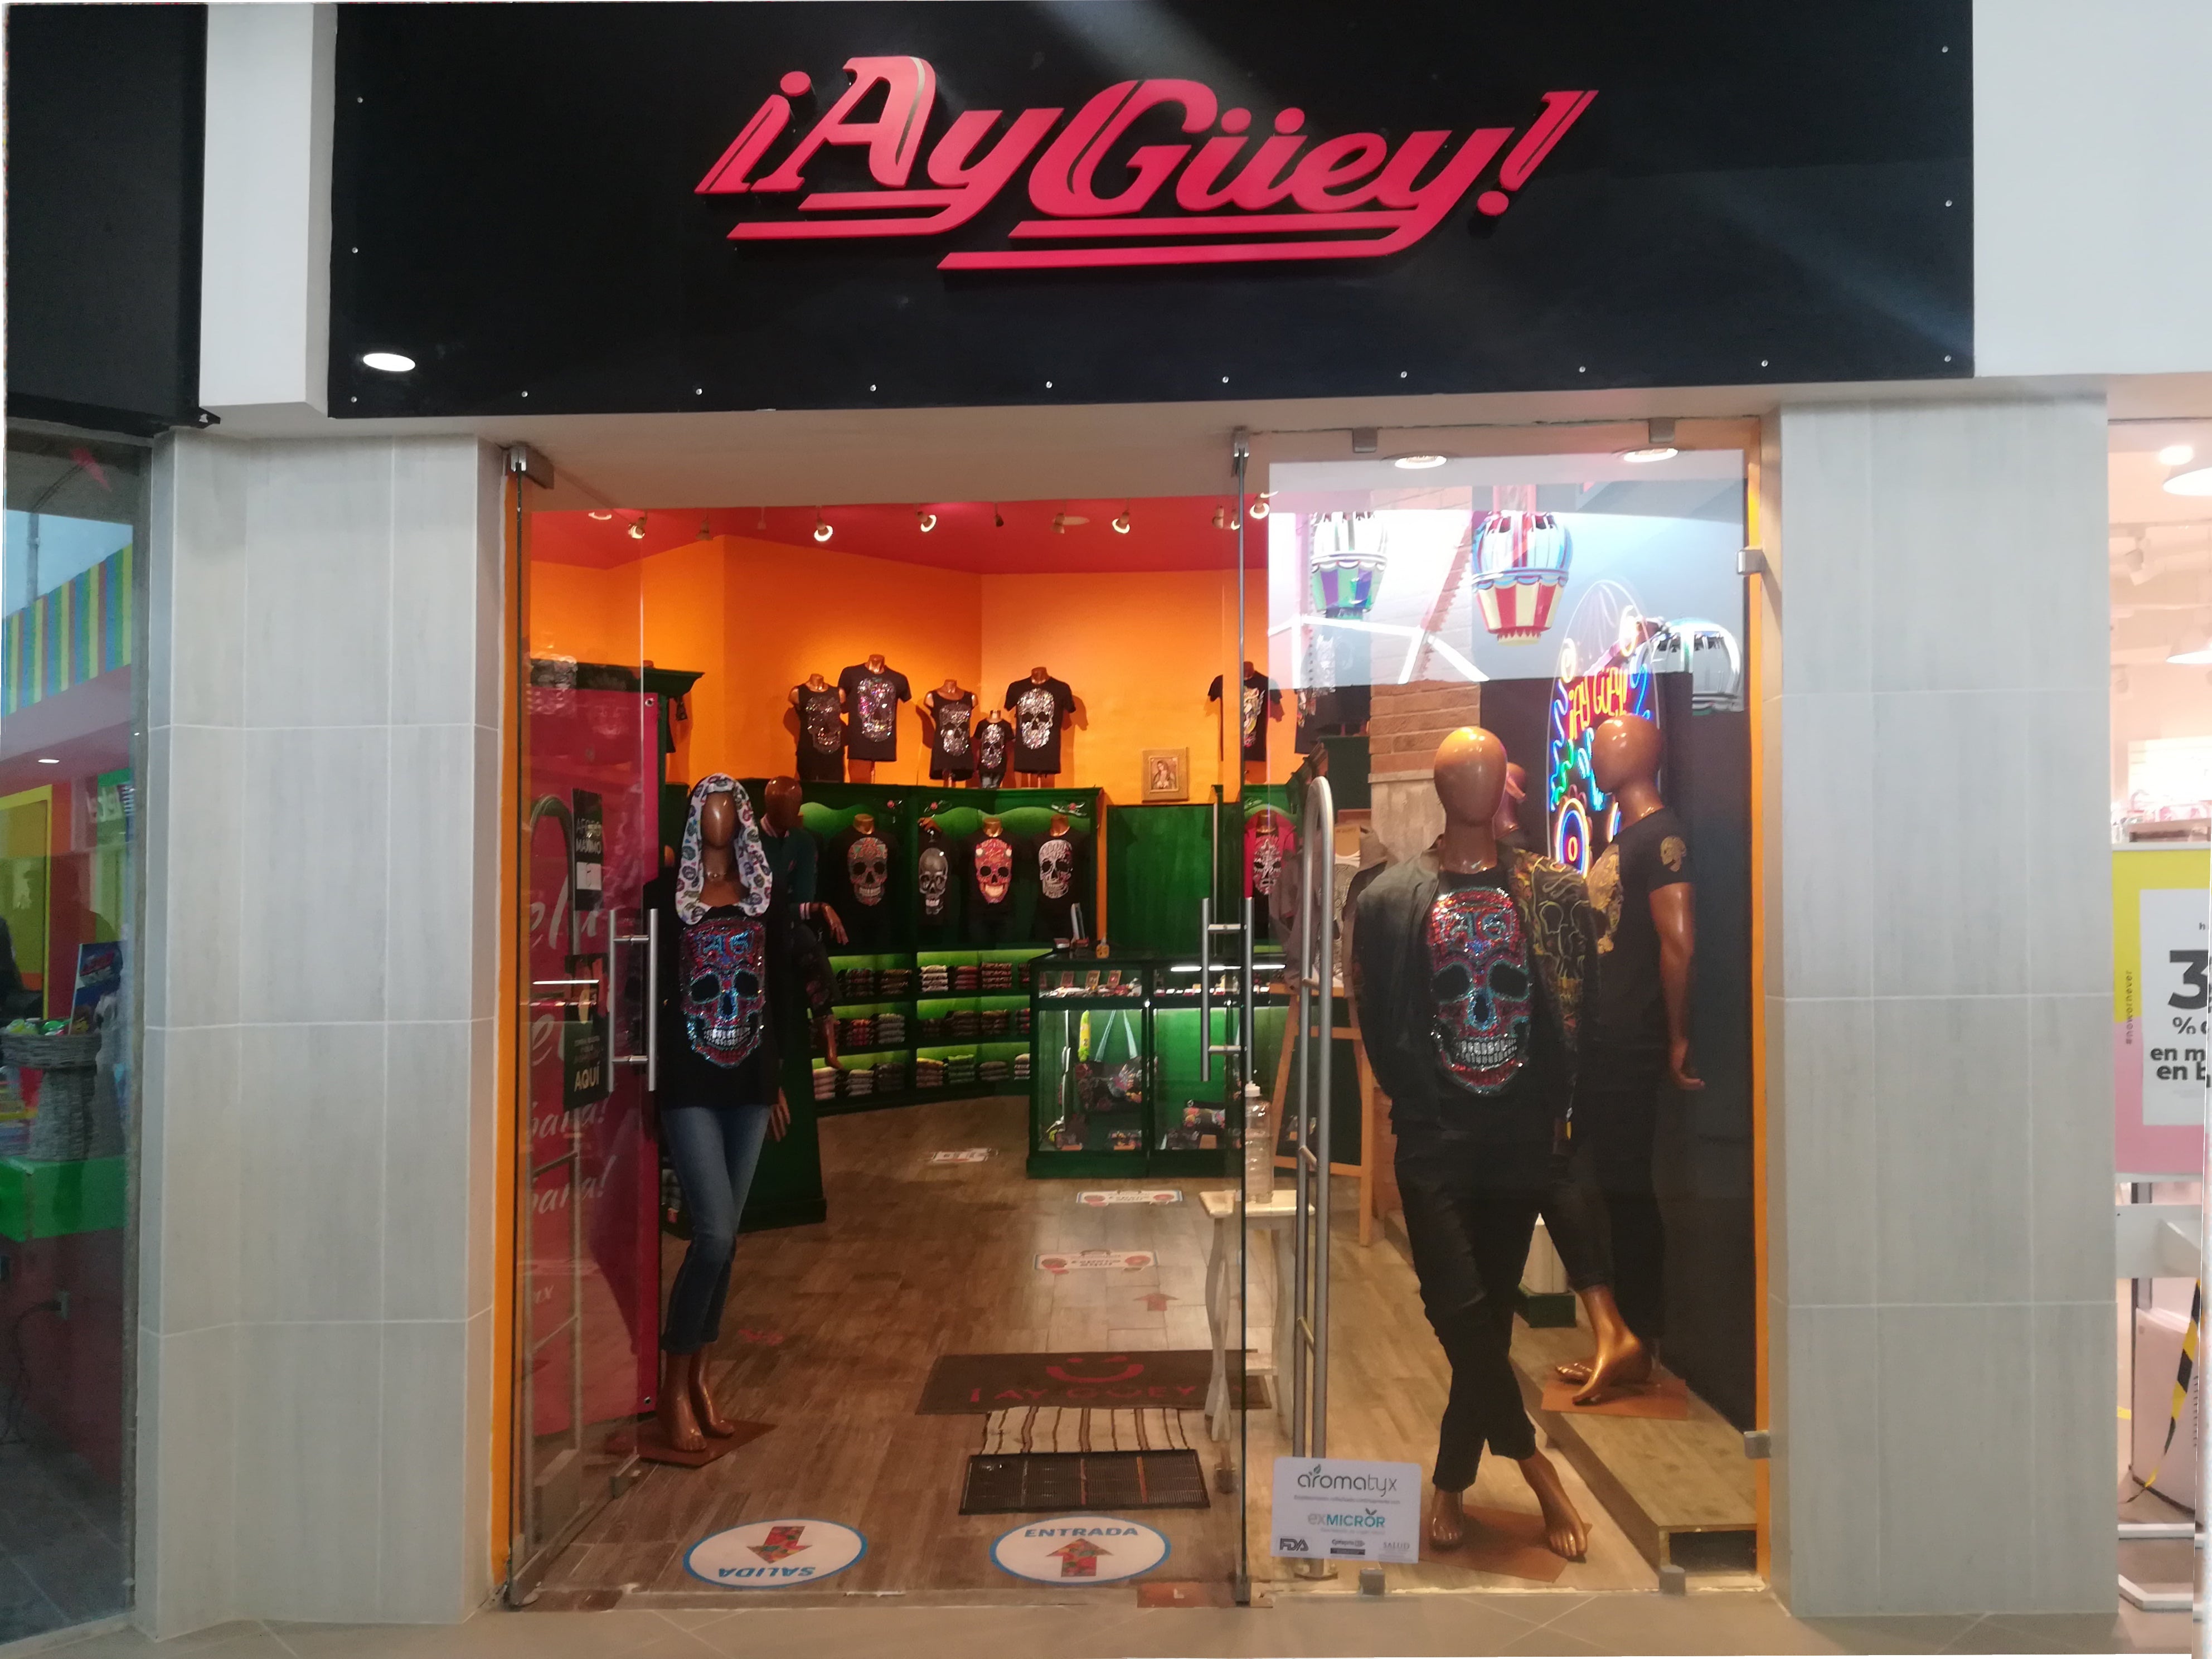 Nuestras Tiendas – ¡Ay Güey! México